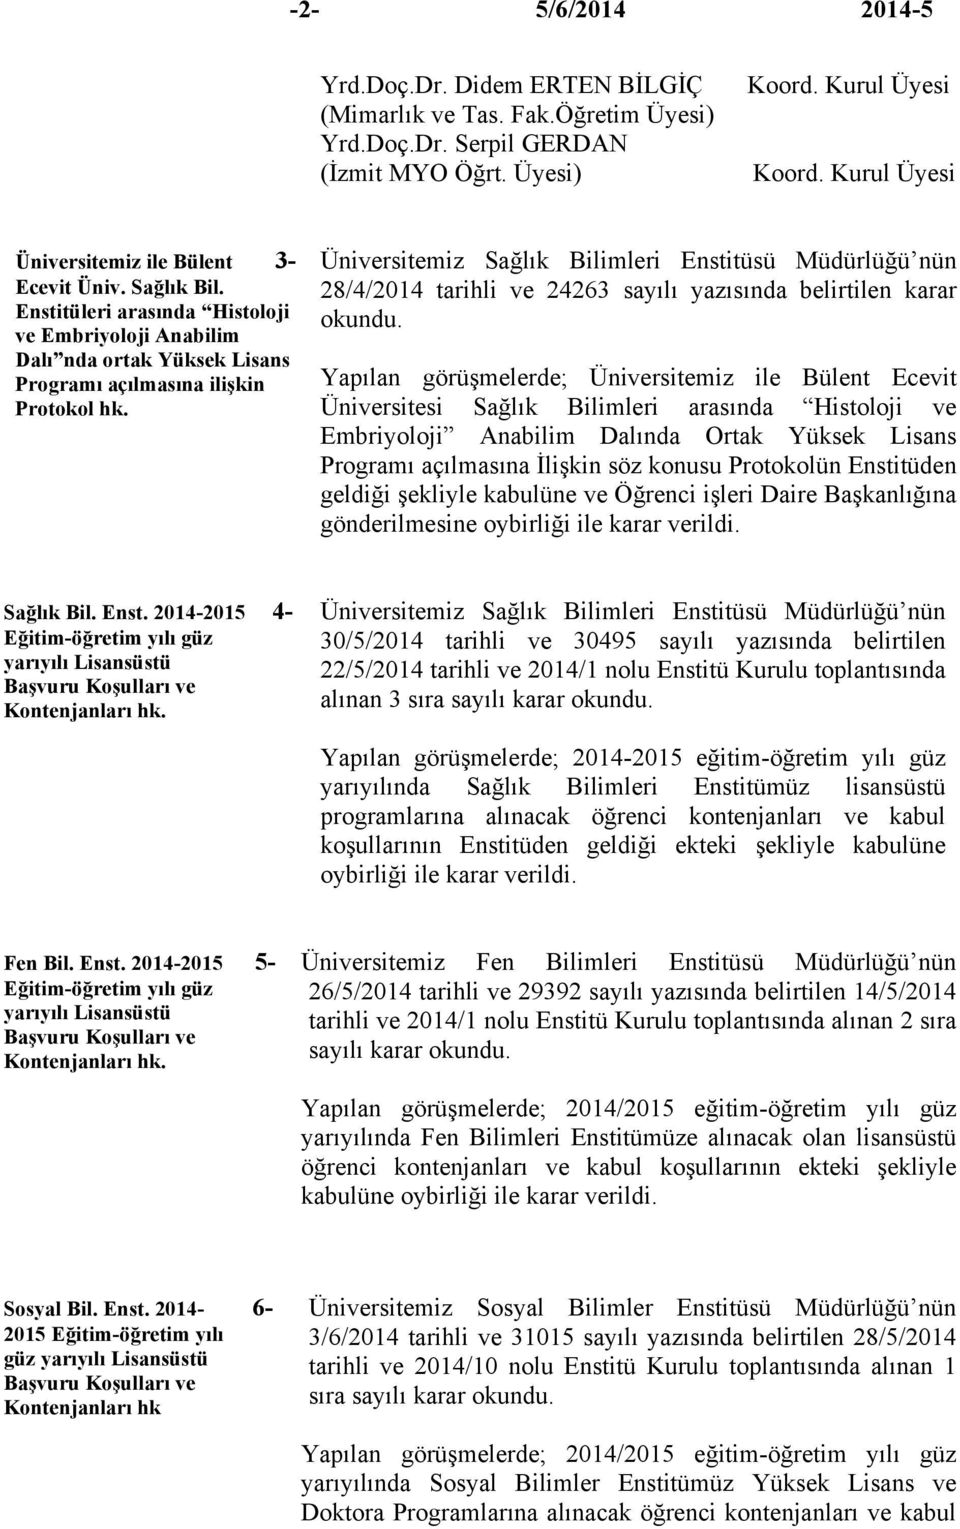 Üniversitemiz Sağlık Bilimleri Enstitüsü Müdürlüğü nün 28/4/2014 tarihli ve 24263 sayılı yazısında belirtilen karar Yapılan görüşmelerde; Üniversitemiz ile Bülent Ecevit Üniversitesi Sağlık Bilimleri